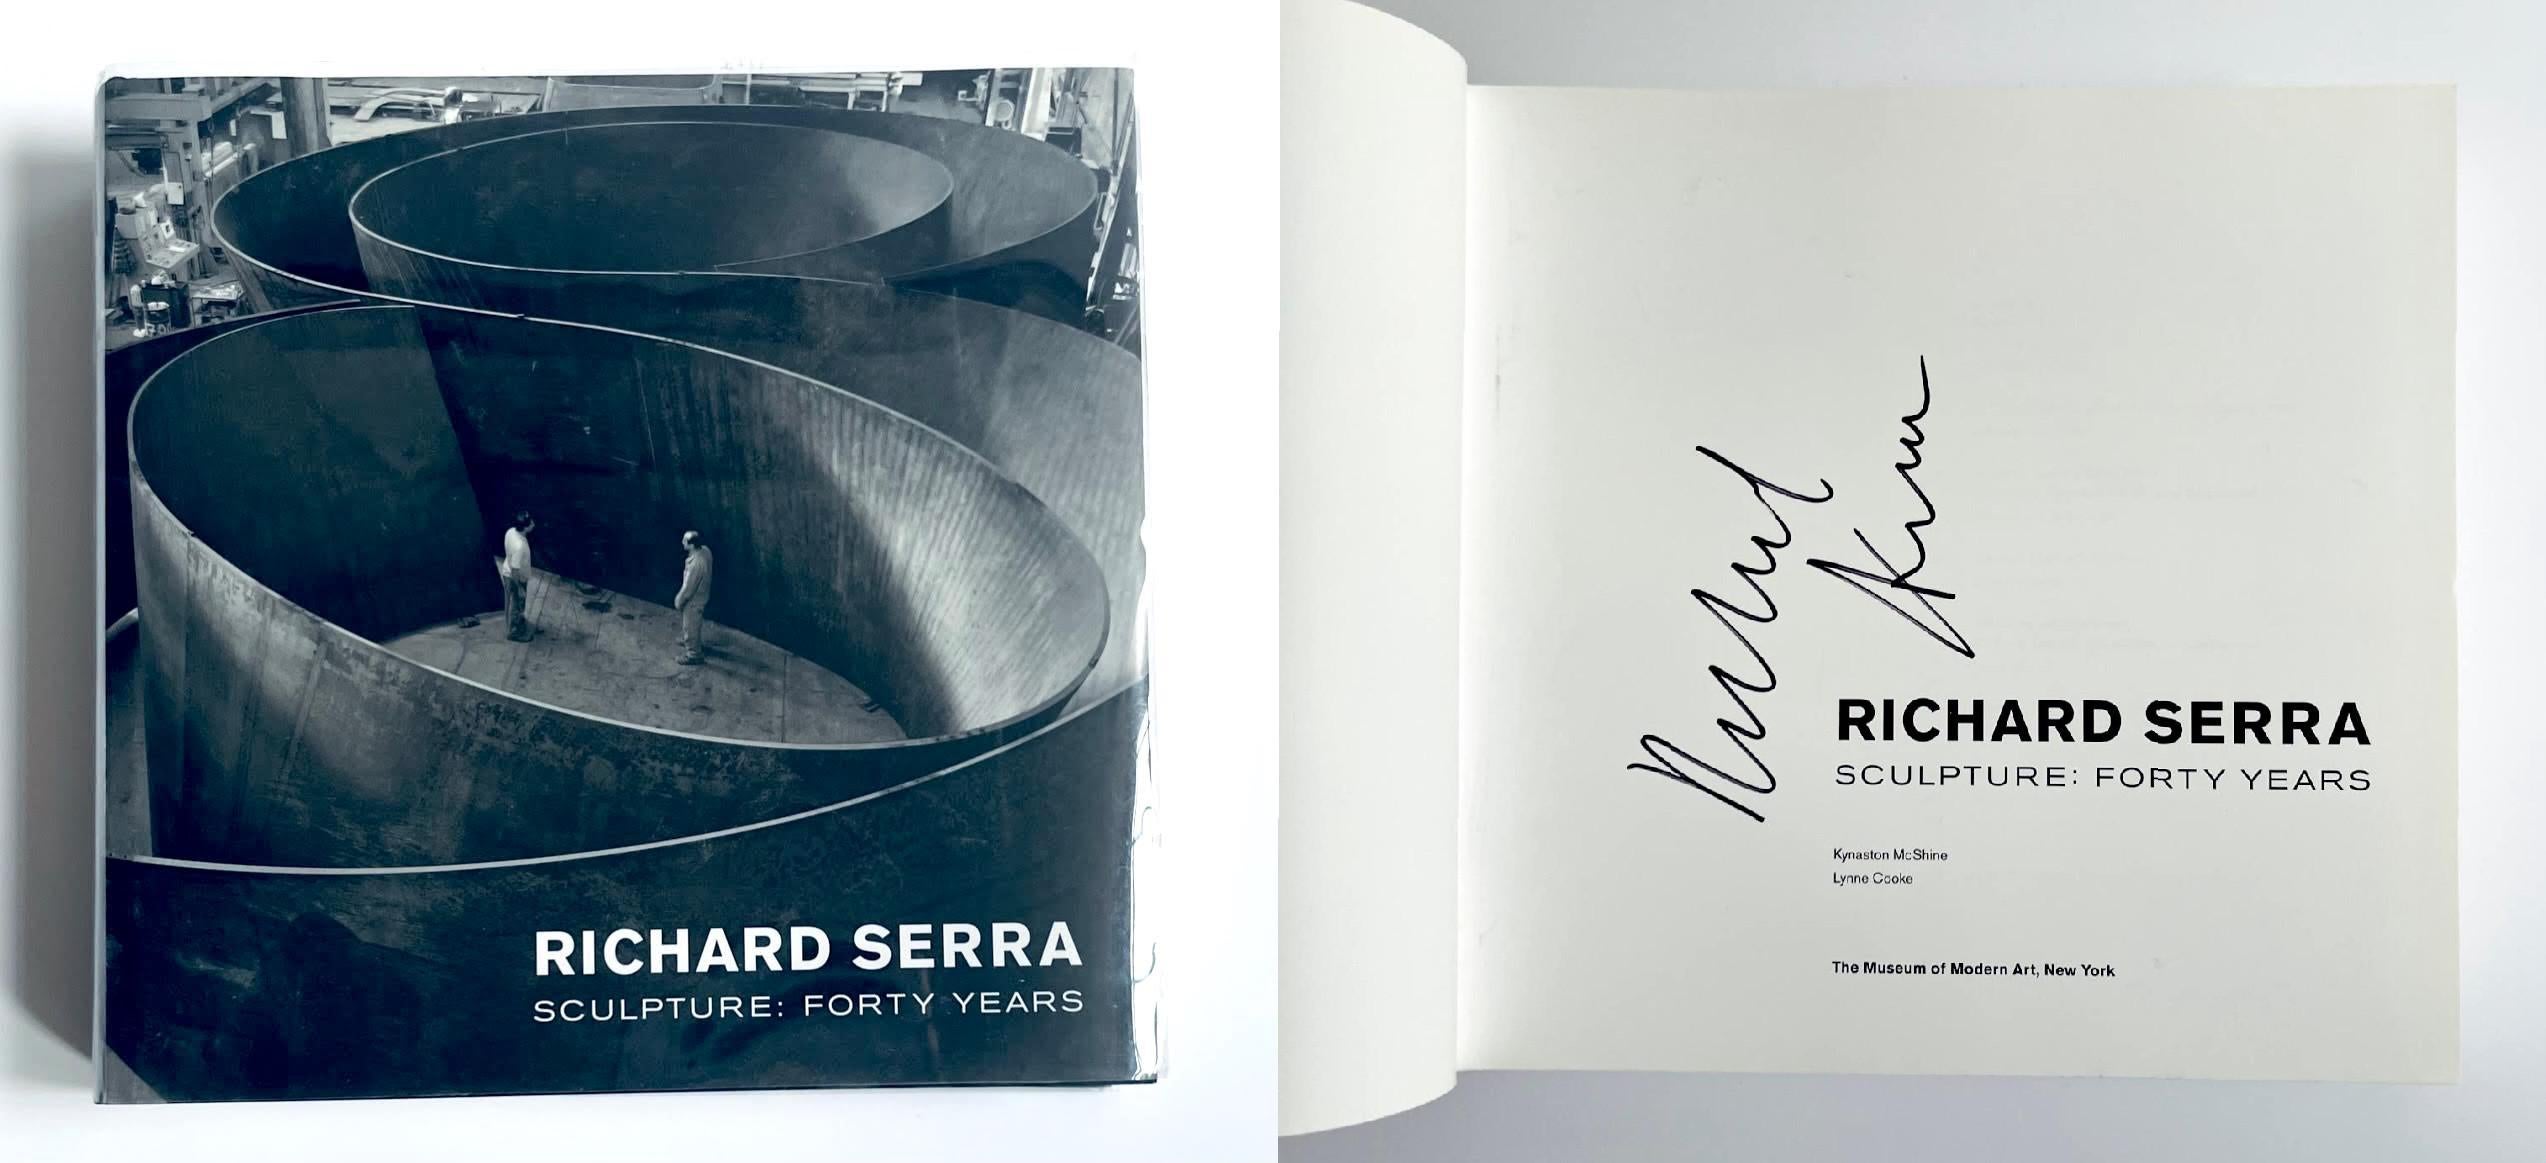 Richard Serra
Bildhauerei: Vierzig Jahre (handsigniert von Richard Serra), 2007
Gebundene Monografie (Signiert von Richard Serra auf der Titelseite)
Handsigniert mit Marker von Richard Serra auf der Titelseite
10 1/4 × 11 × 2 Zoll
Ungerahmt
Richard